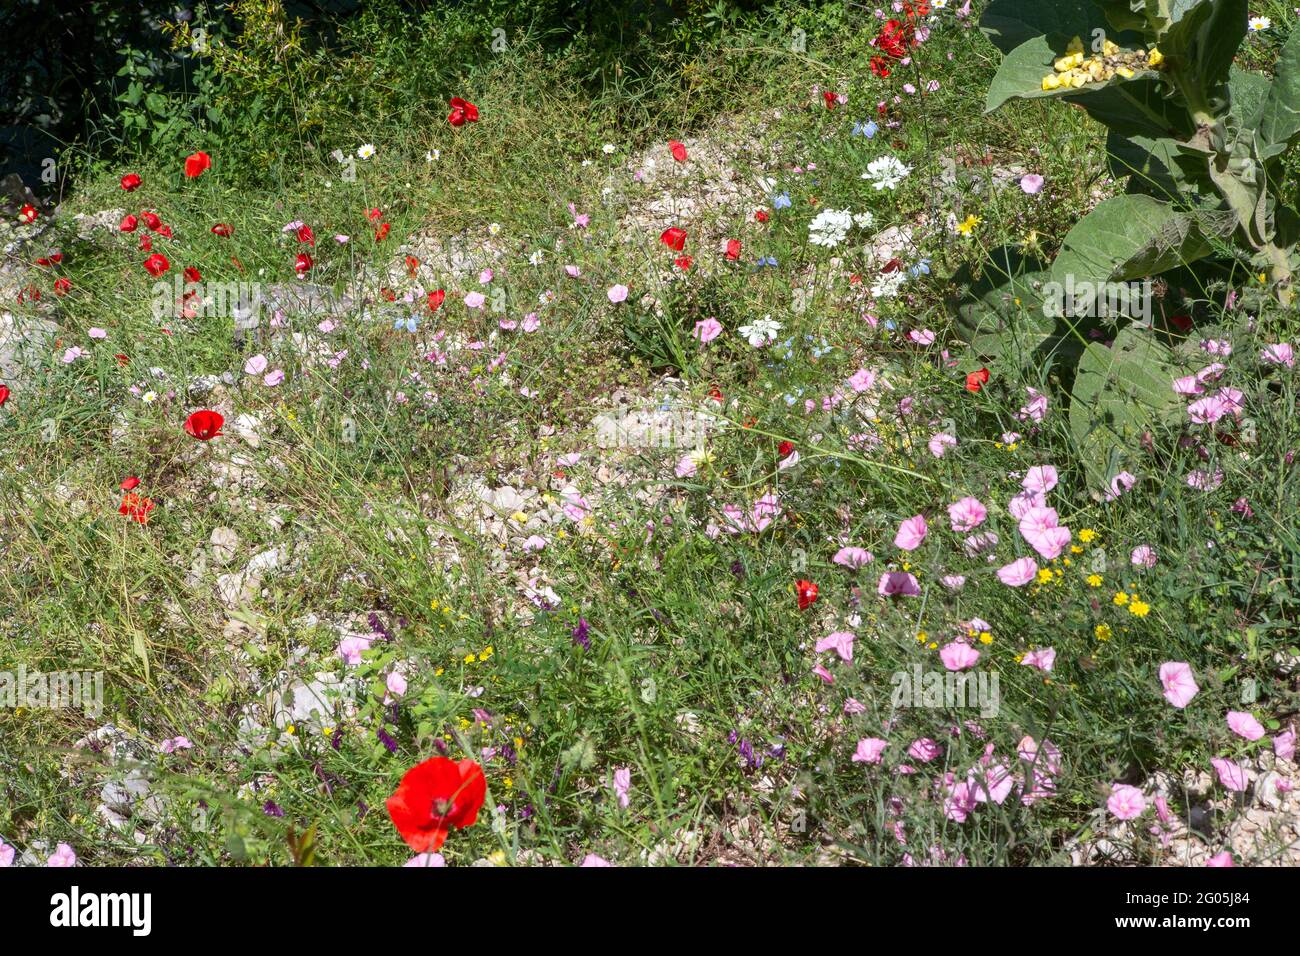 Amapolas y otras flores de prados, aldea de Blagaj cerca de Mostar, manantial del río Buna, Herzegovina, Bosnia y Herzegovina Foto de stock